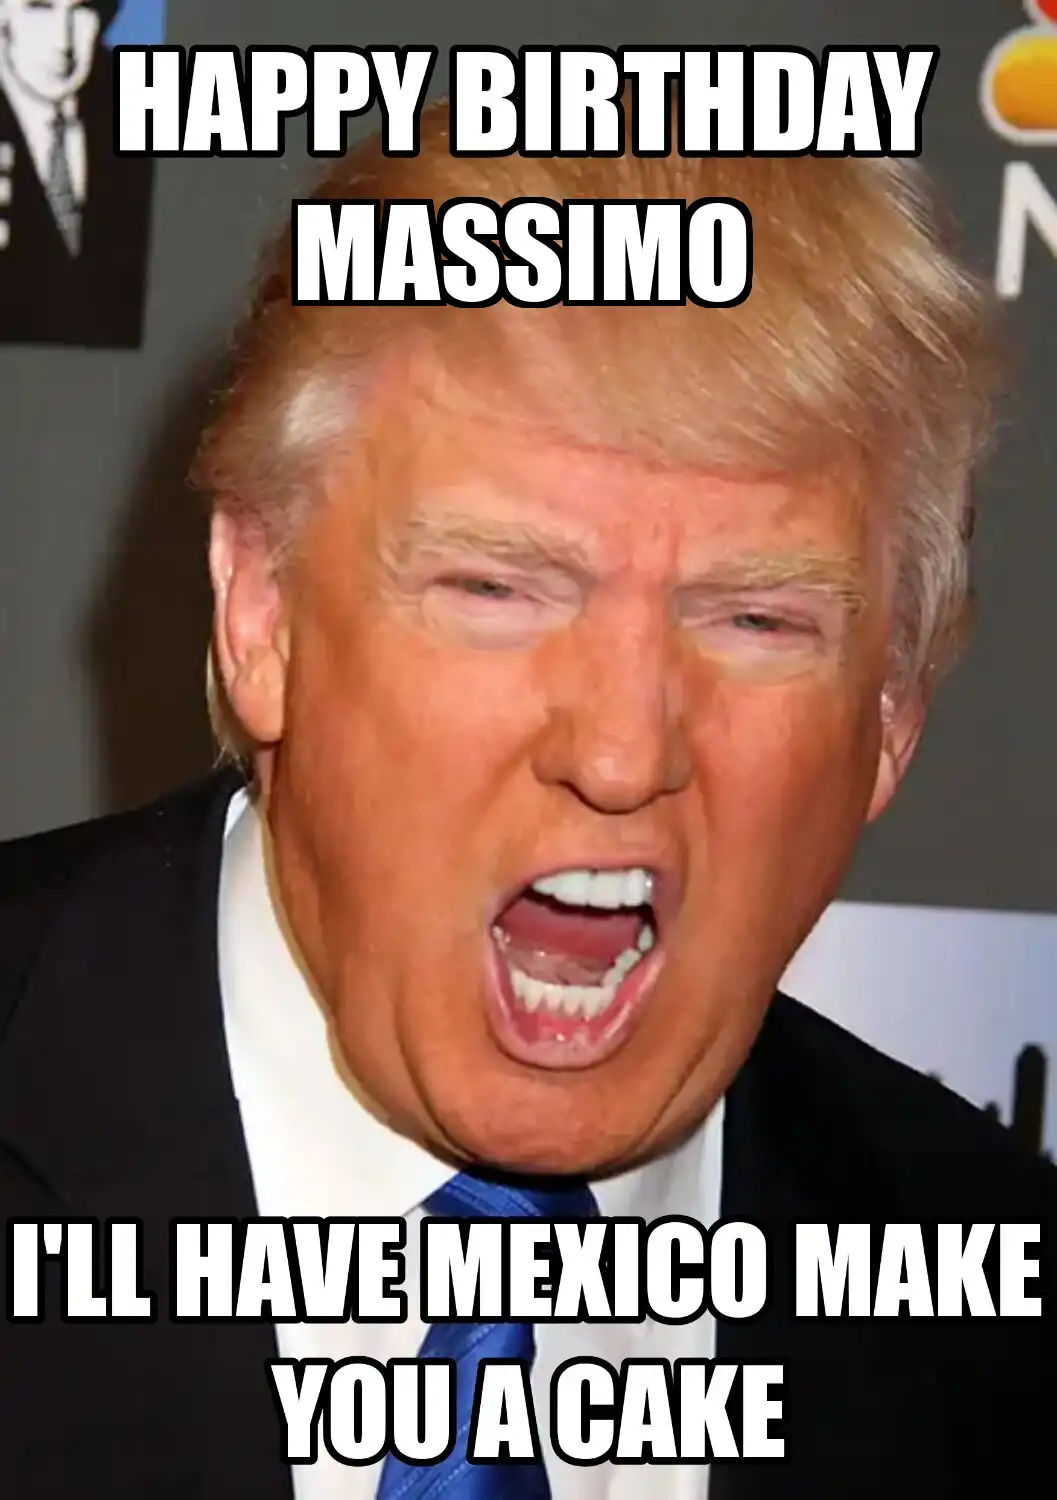 Happy Birthday Massimo Mexico Make You A Cake Meme